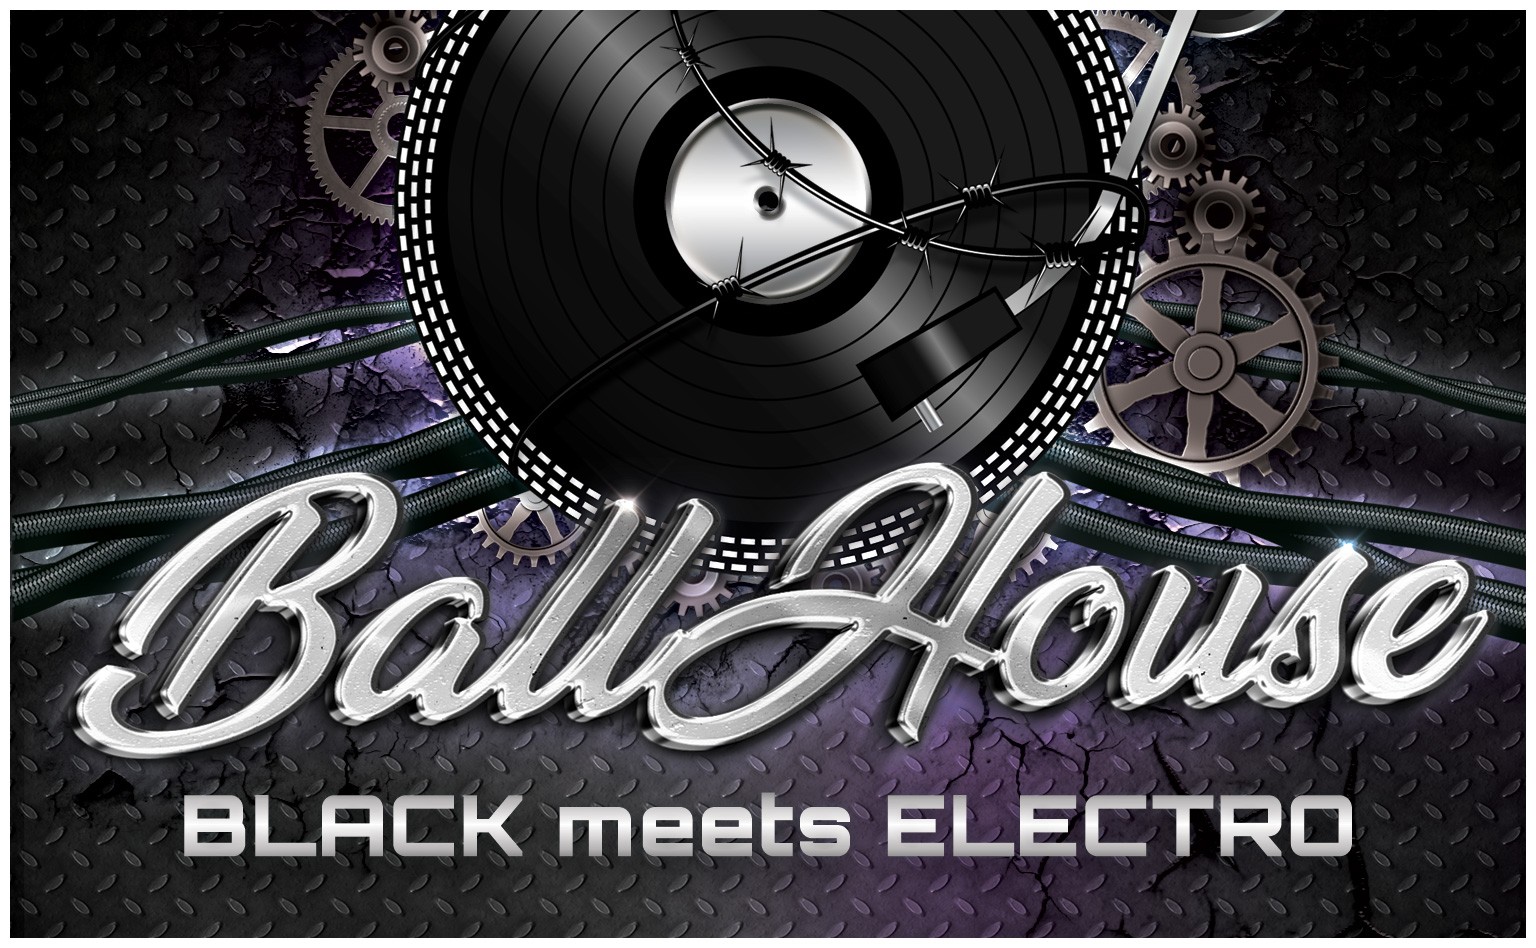 BallHouse - Black meets Electro